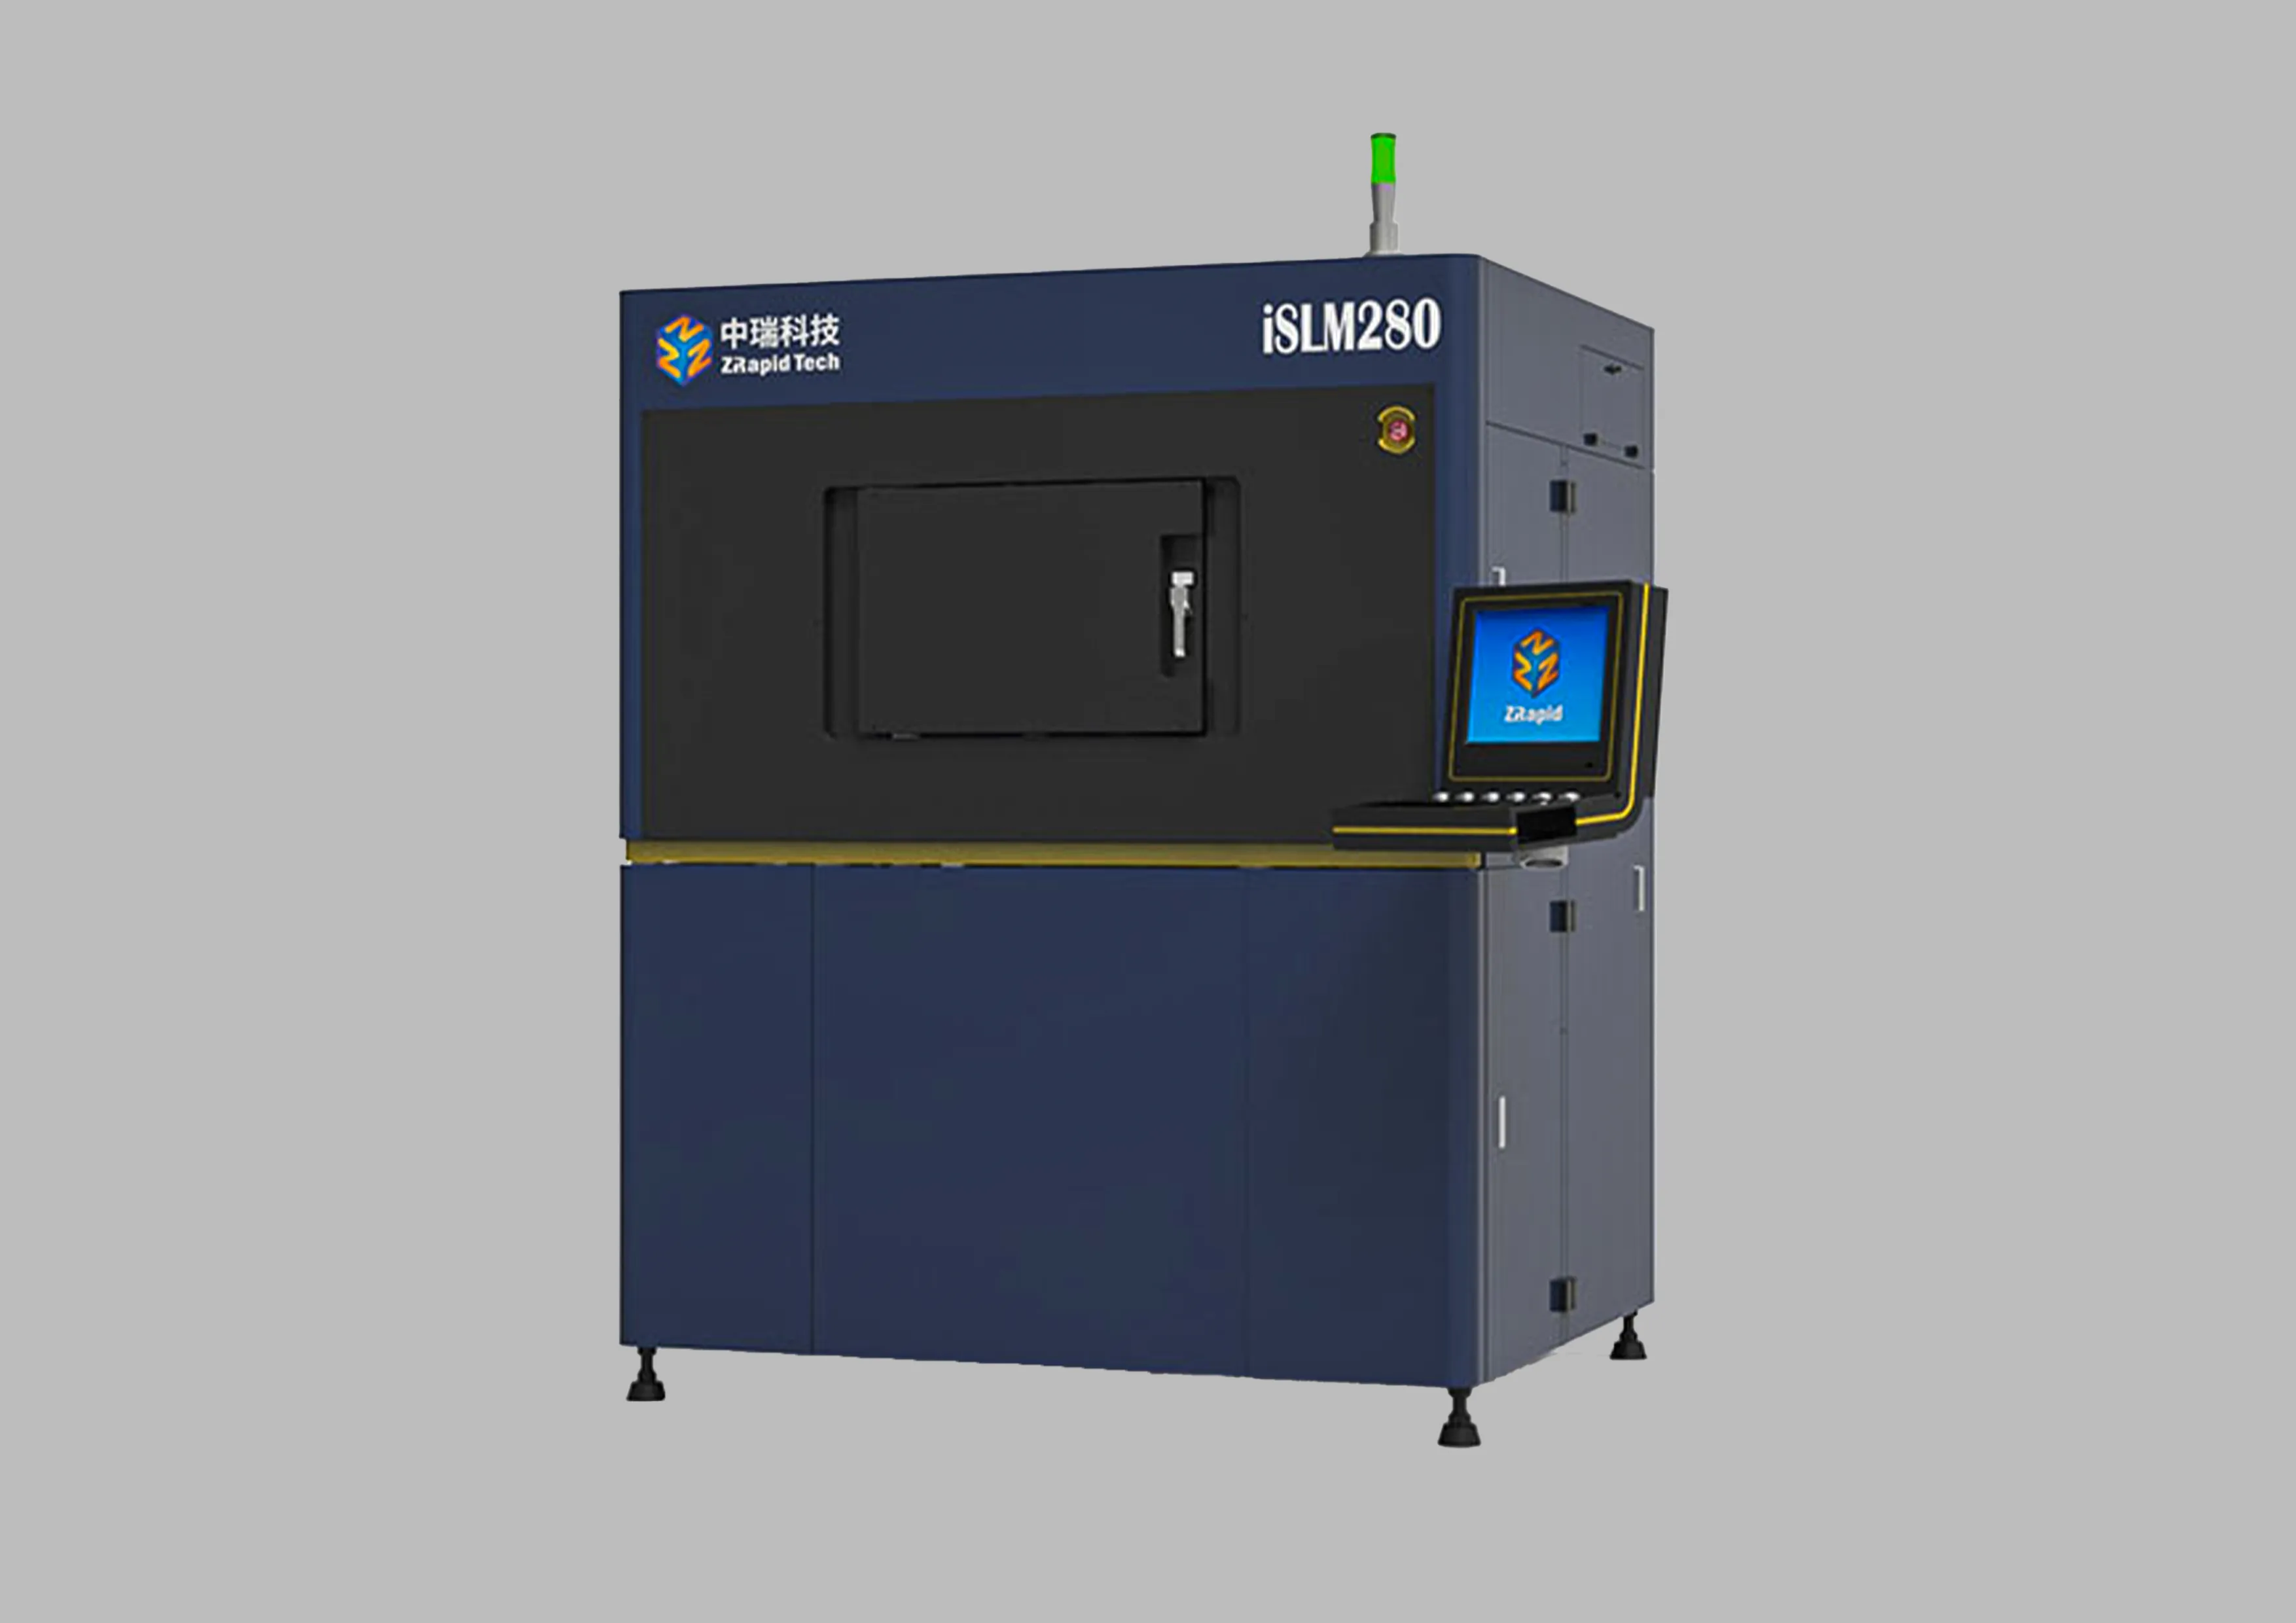 Industrial Metal 3D Printer SLM 280